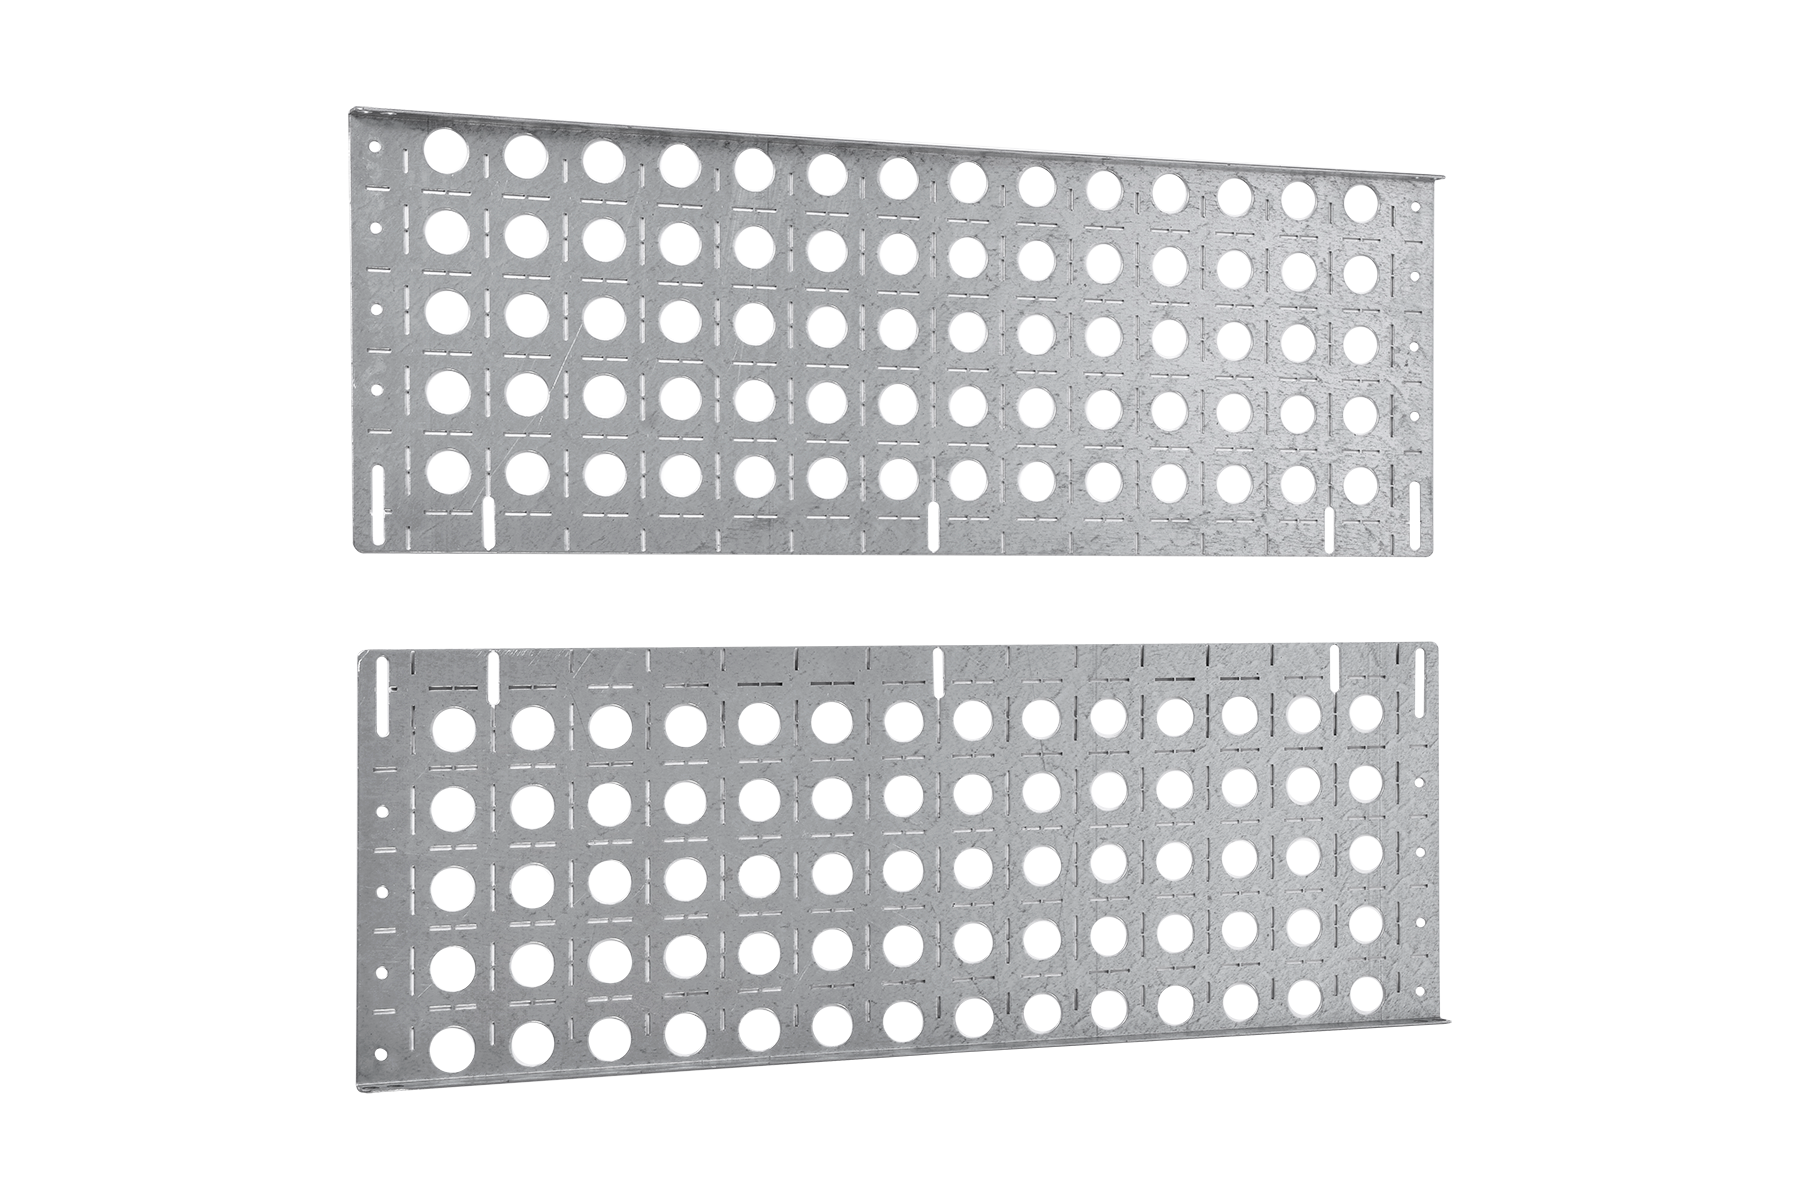 Комплект боковых монтажных панелей 19" (В800 × Г300) с уголками для крепления оборудования